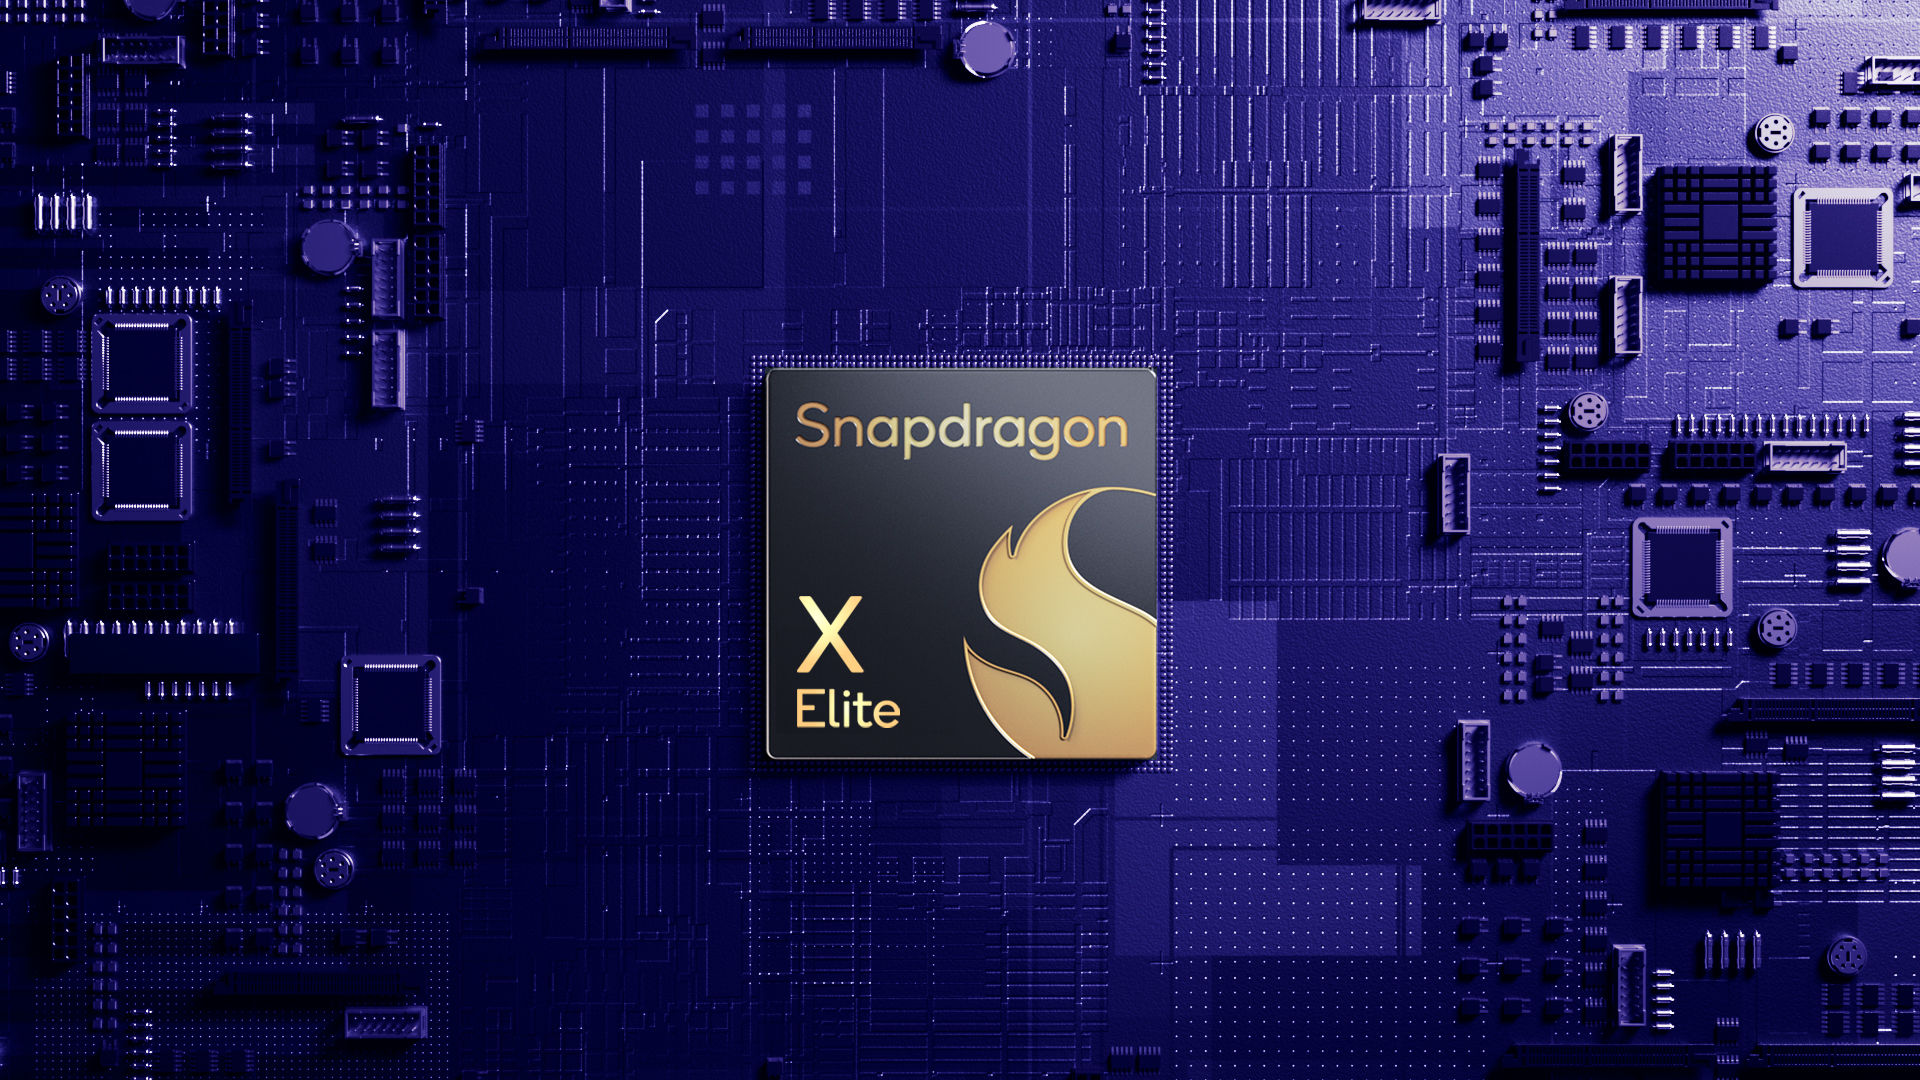 Le affermazioni di Qualcomm in merito alle prestazioni del chip Snapdragon X Elite non erano del tutto oneste